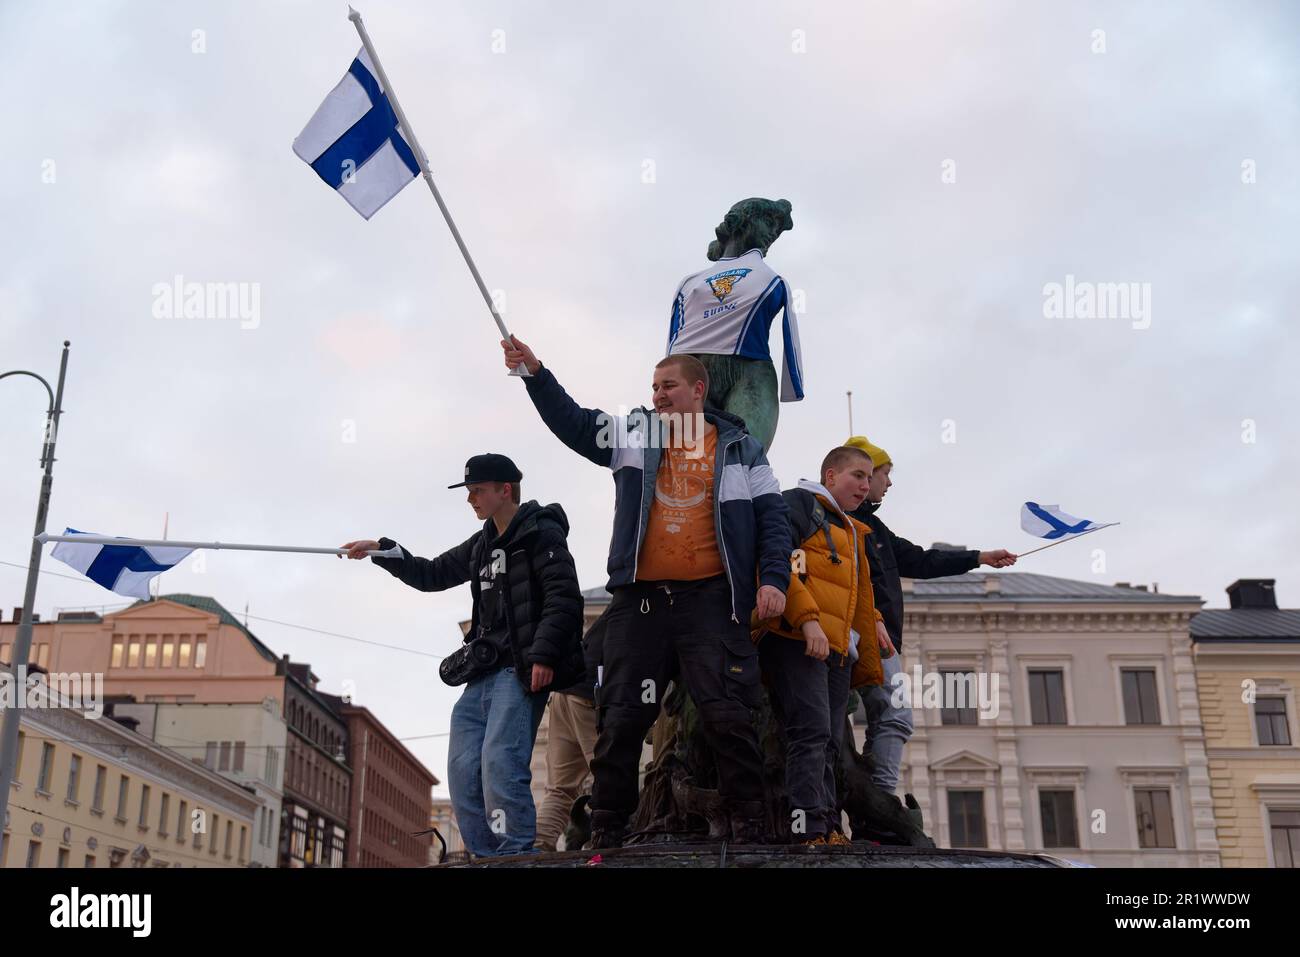 Helsinki, Finnland - 20. Februar 2022: Finnische Eishockeyfans feiern bei den olympischen spielen 2022 in Peking Finnlands erste olympische Goldmedaille im Eishockey Stockfoto